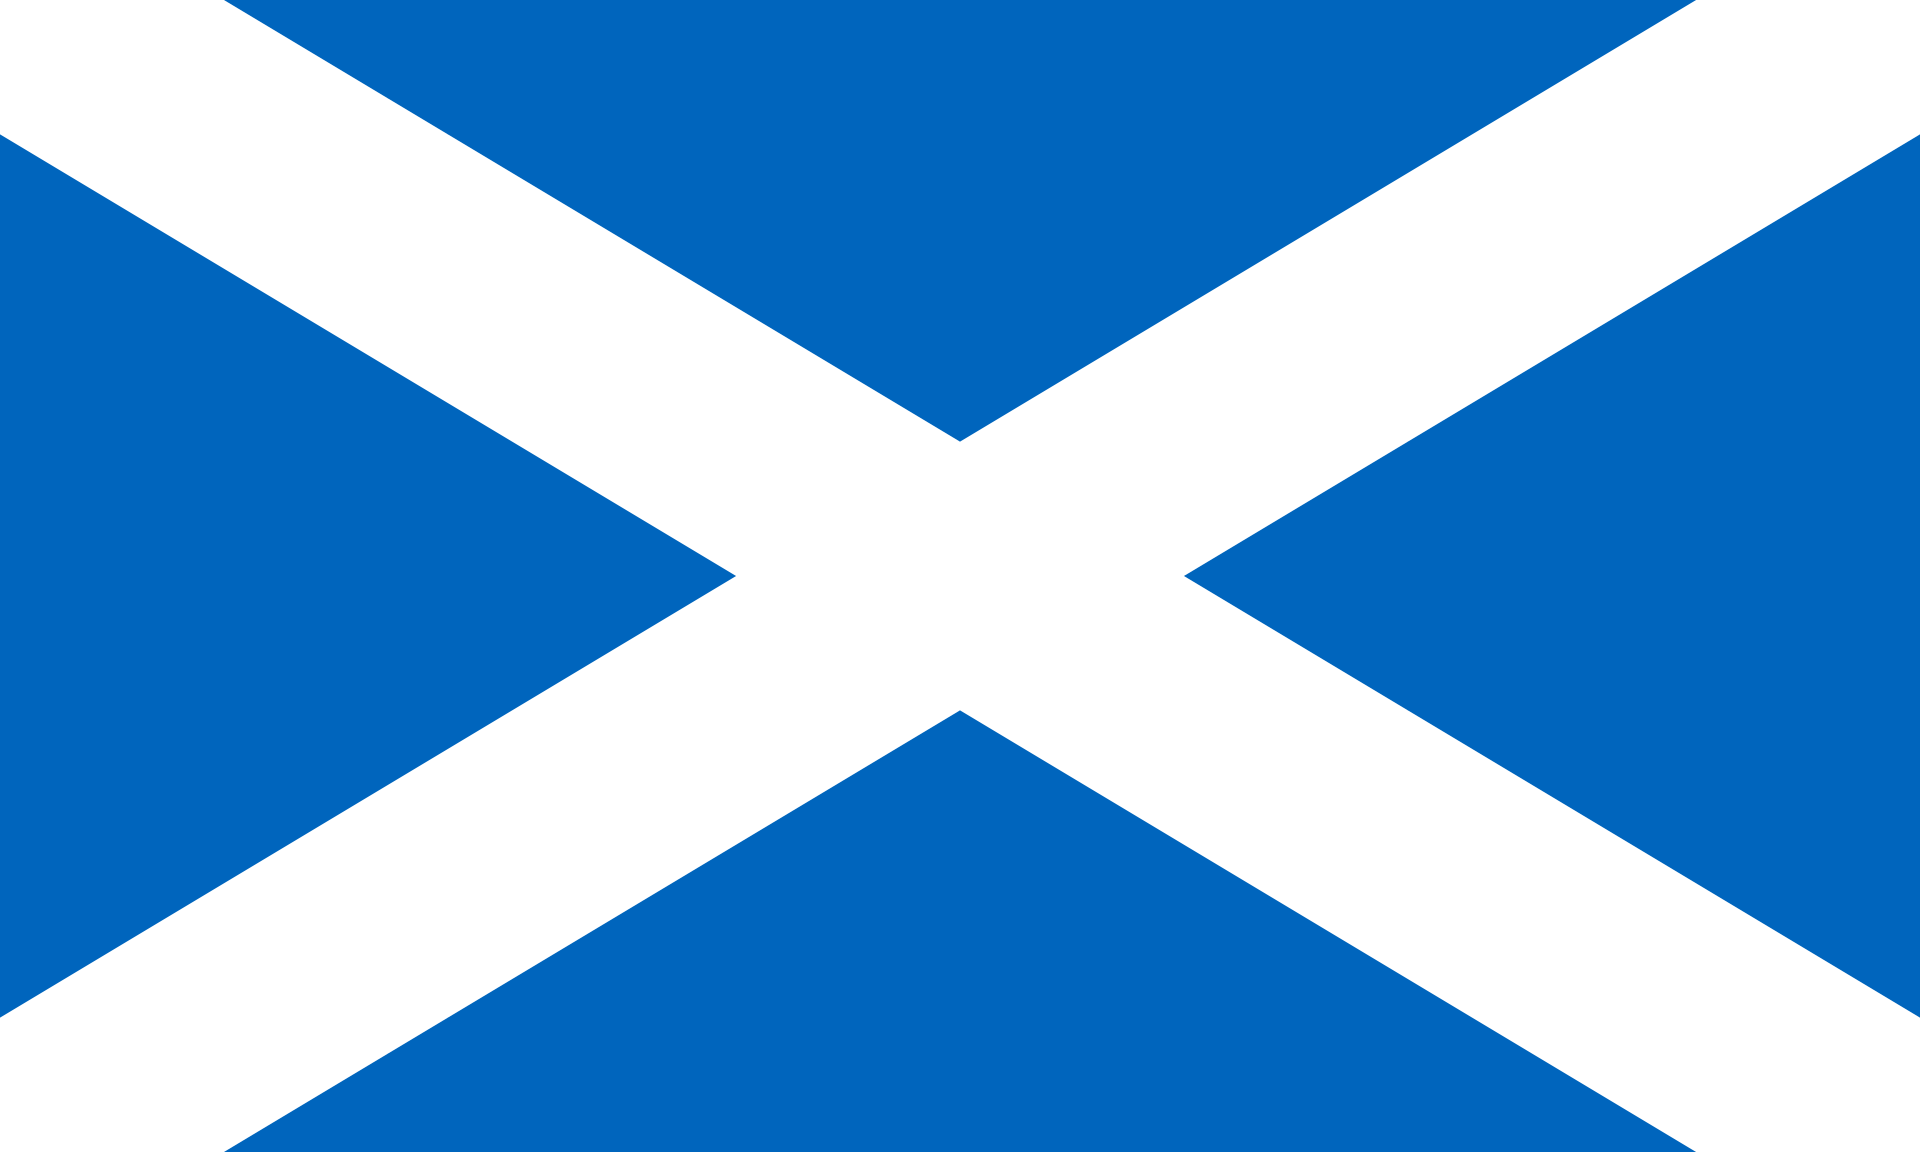 Grafika przedstawia flagę Szkocji. Na błękitnym tle widnieją dwa białe pasy, biegnące od wierzchołów flagi. Pady przecinają się na środku flagi.